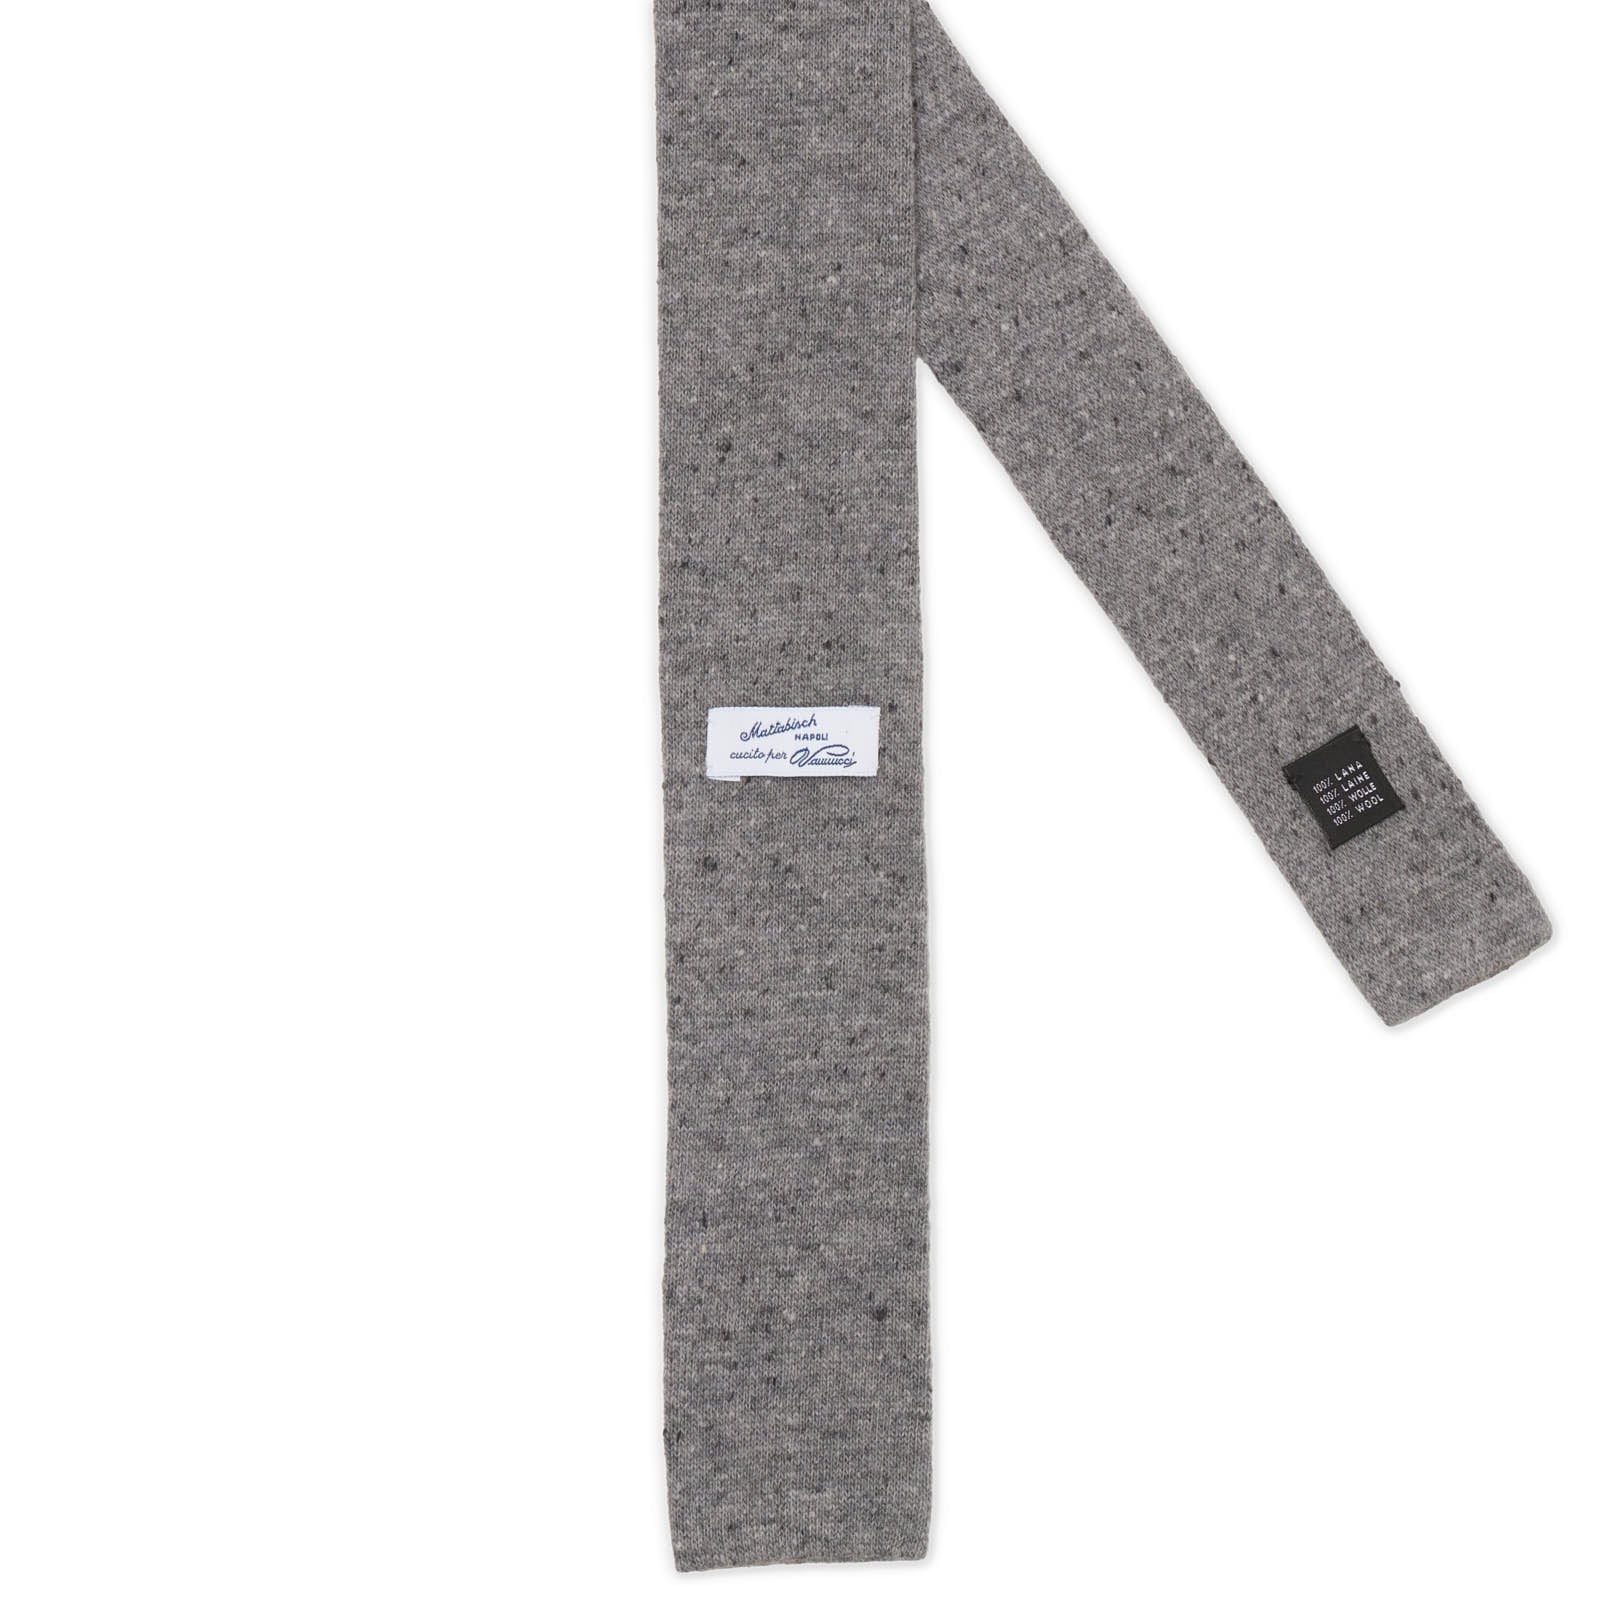 MATTABISCH FOR VANNUCCI Gray Wool Knit Tie NEW